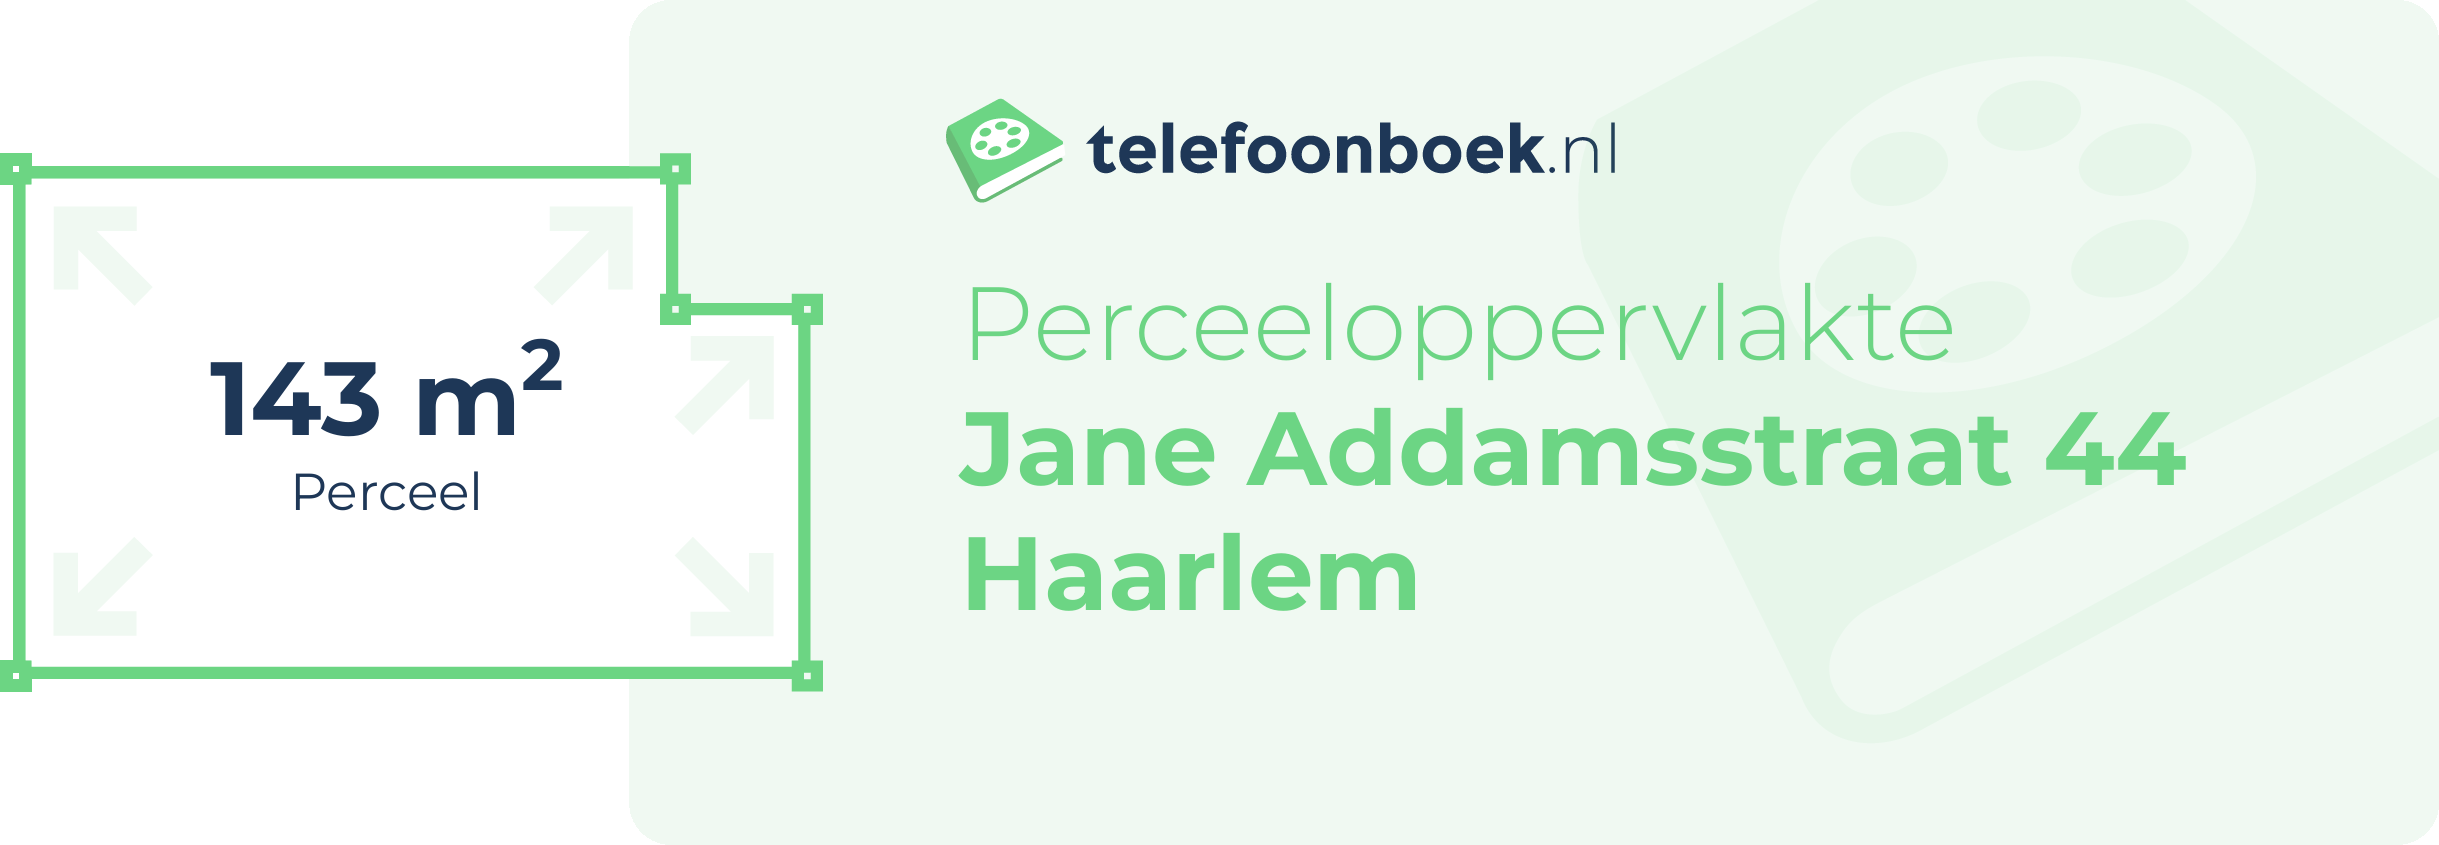 Perceeloppervlakte Jane Addamsstraat 44 Haarlem